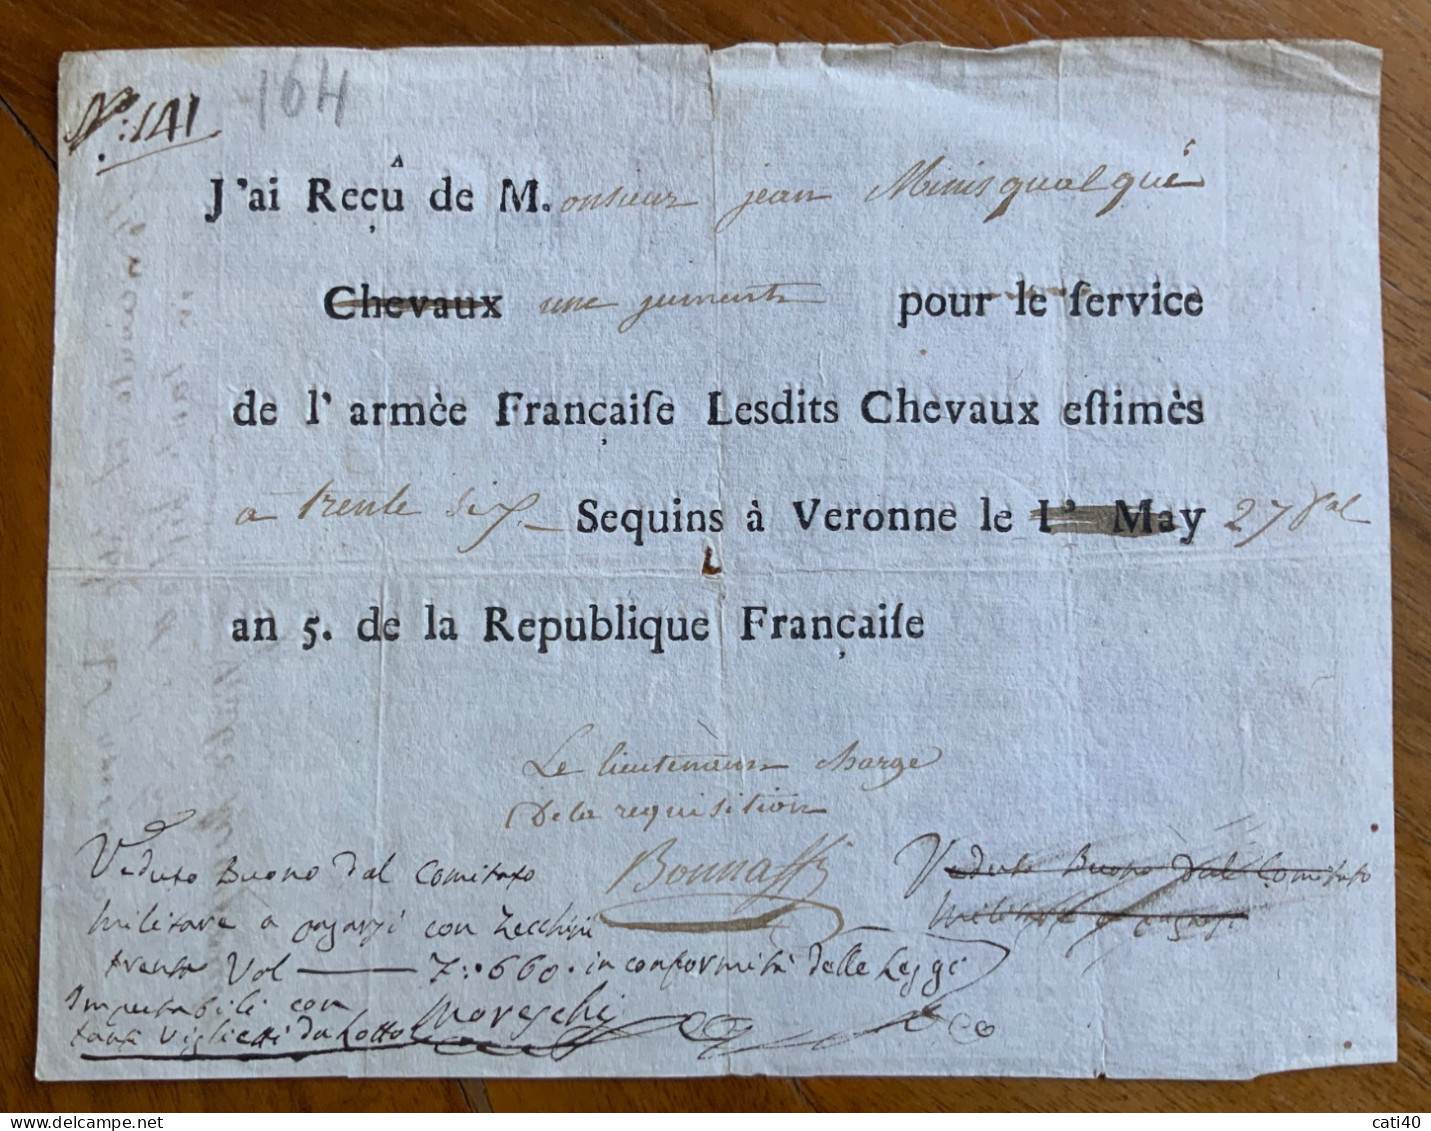 ARMEE FRANCAISE - BUONO PER SERVIZIO  COMITATO DA PAGARSI CON ZECCHINI 7,660 ...27 MAY An.5 De La REPUBLIQUE FRANCAISE.. - Historische Dokumente